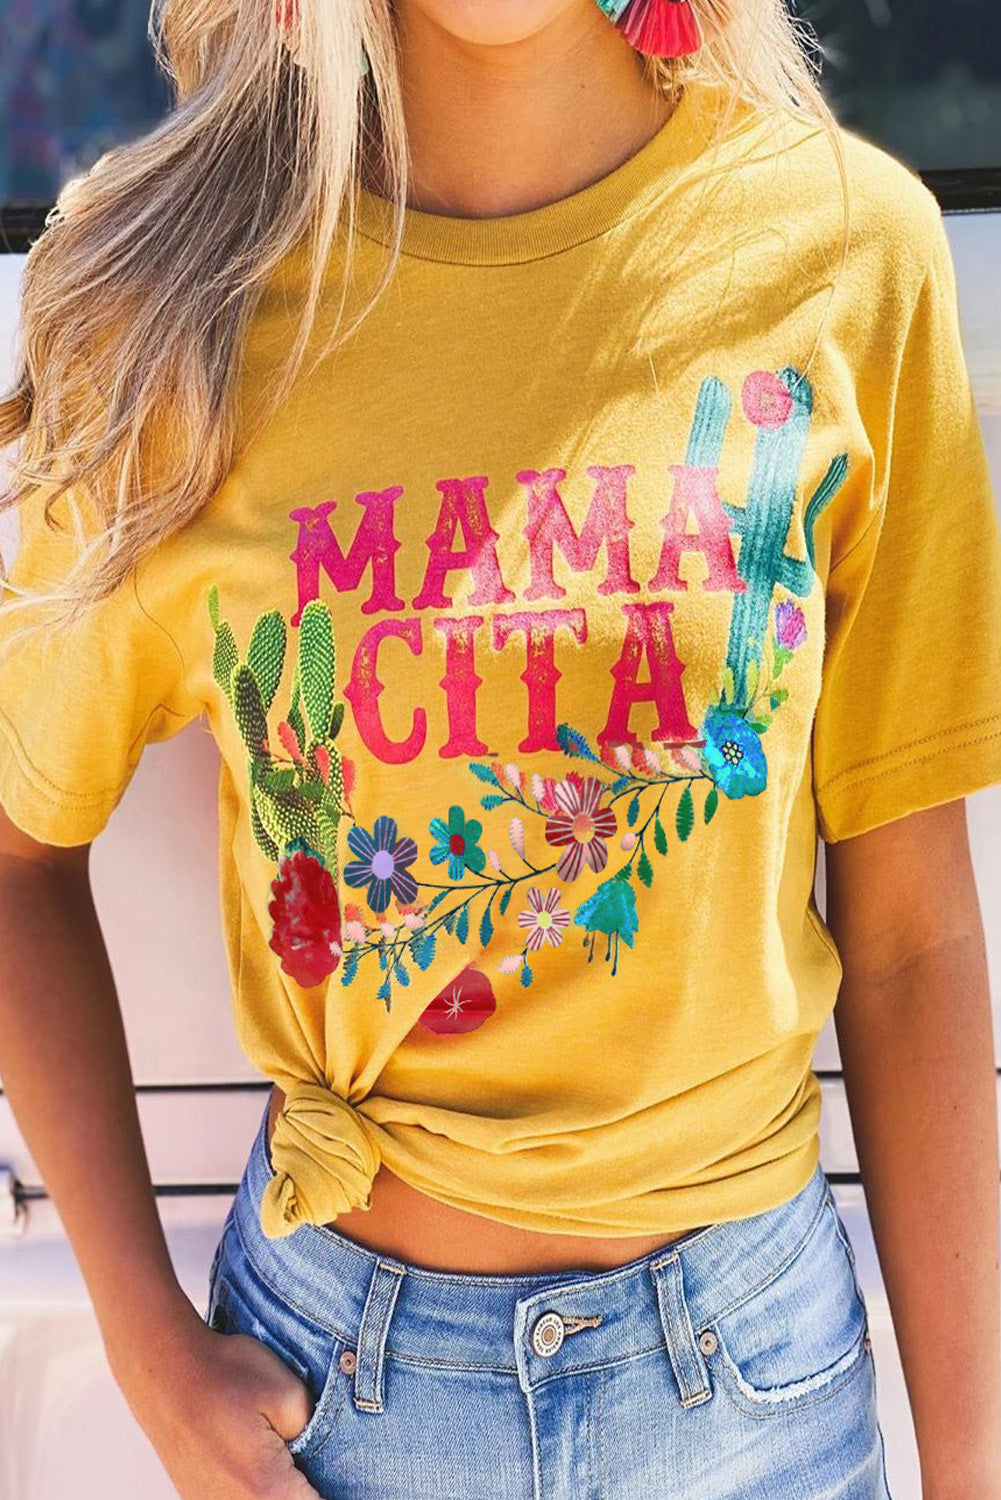 Mamacita con maglietta Cactus